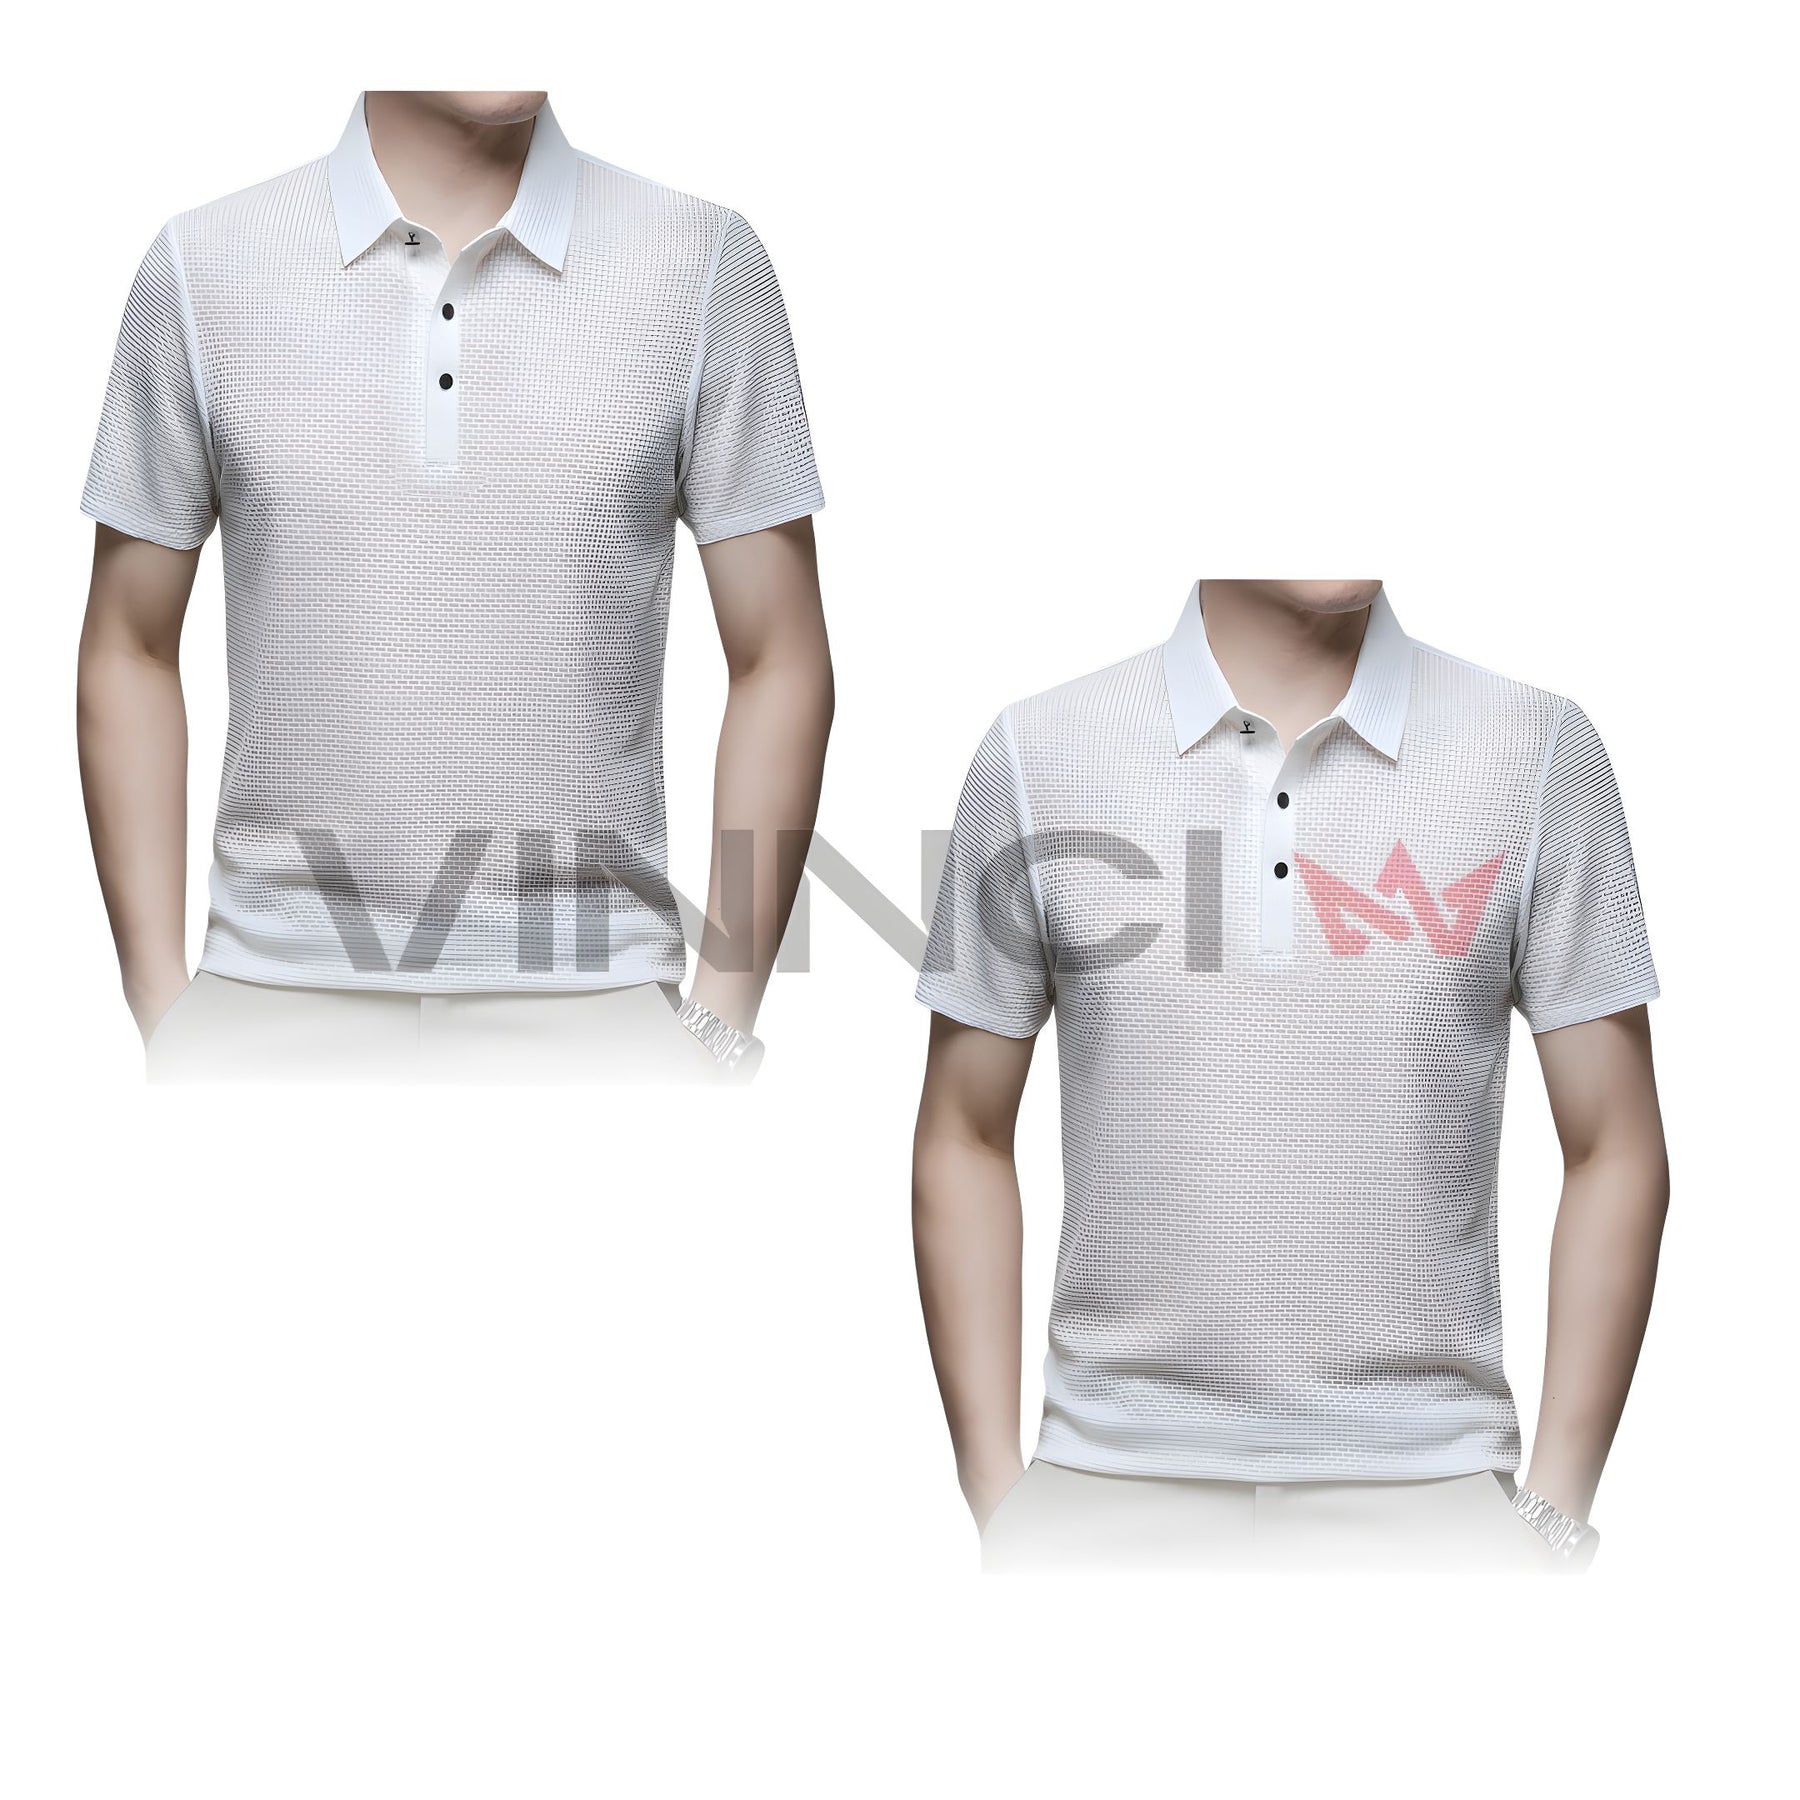 Camisa Polo Premium Texturizada - Conforto e Elegância [Compre 1, Leve 2] Camisa Polo Premium Texturizada - Conforto e Elegância [Compre 1, Leve 2] VINNCI Store Branco Branco P